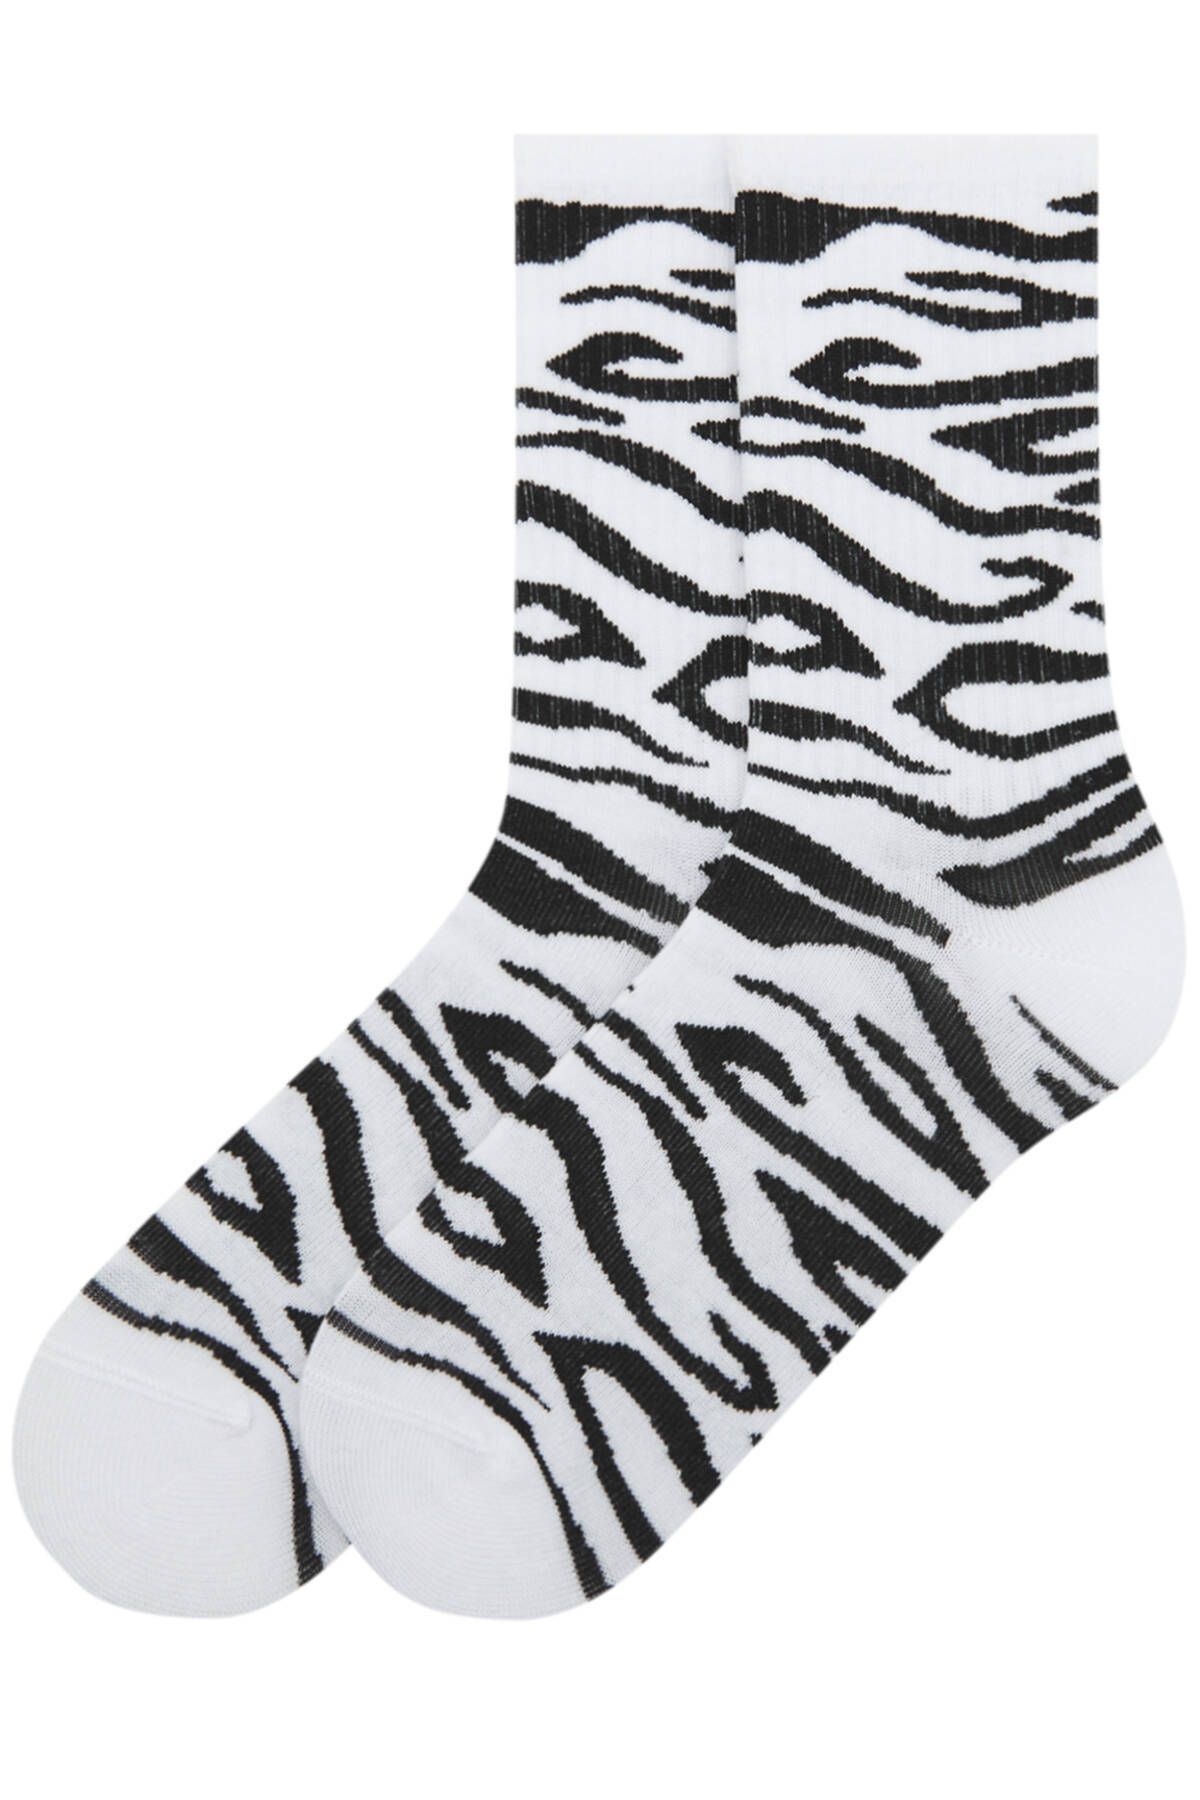 Pull & Bear Zebra desenli çorap